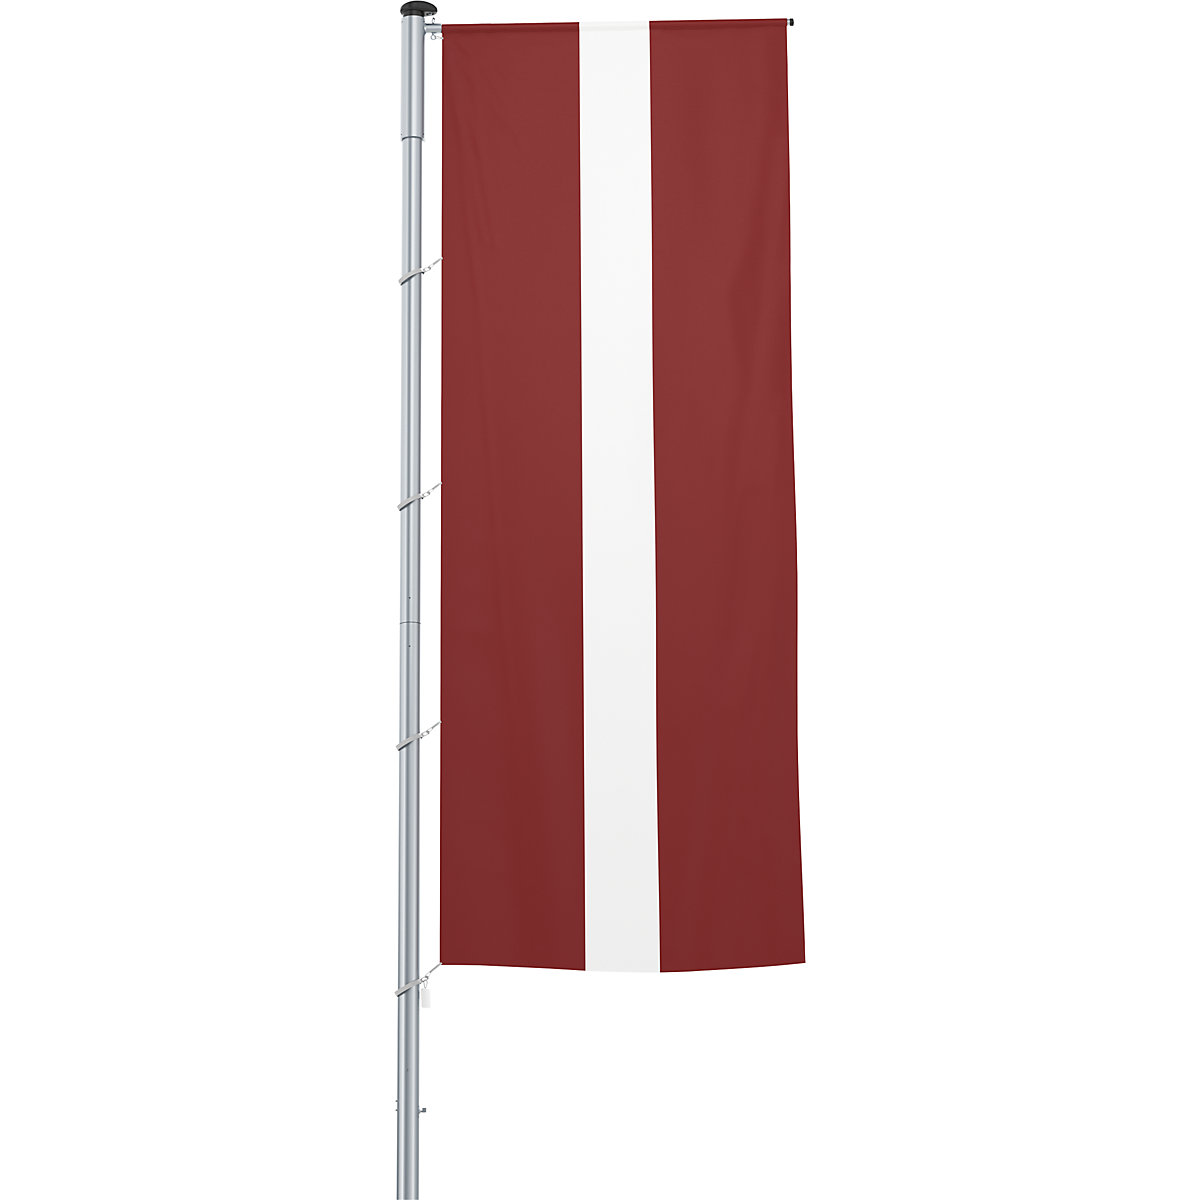 Bandera con pluma/bandera del país – Mannus, formato 1,2 x 3 m, Letonia-9